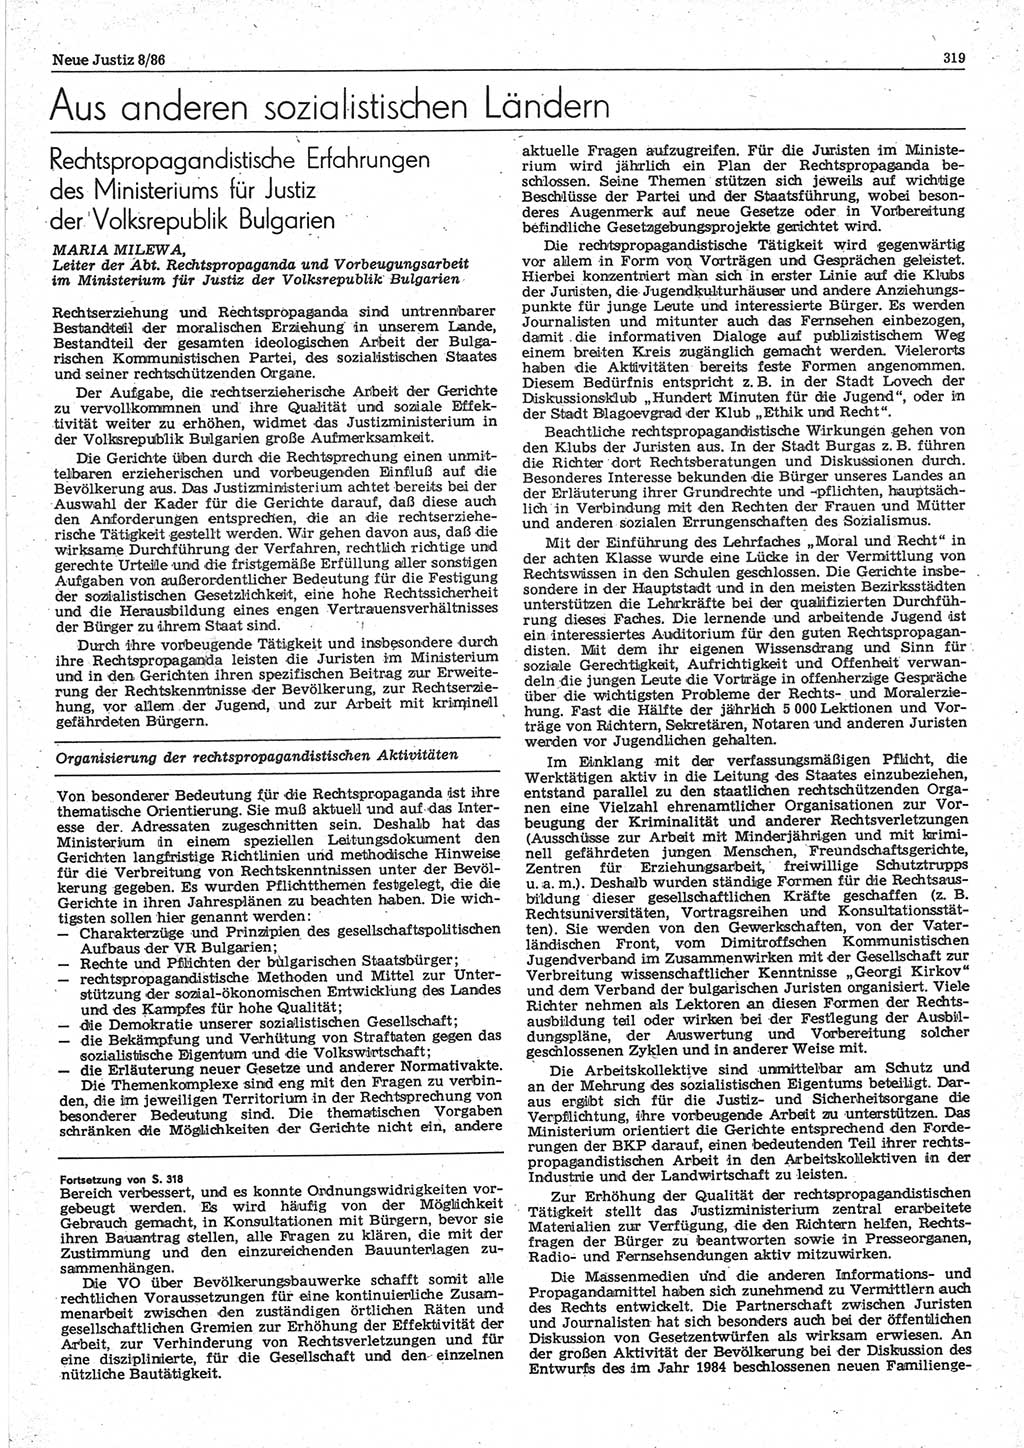 Neue Justiz (NJ), Zeitschrift für sozialistisches Recht und Gesetzlichkeit [Deutsche Demokratische Republik (DDR)], 40. Jahrgang 1986, Seite 319 (NJ DDR 1986, S. 319)